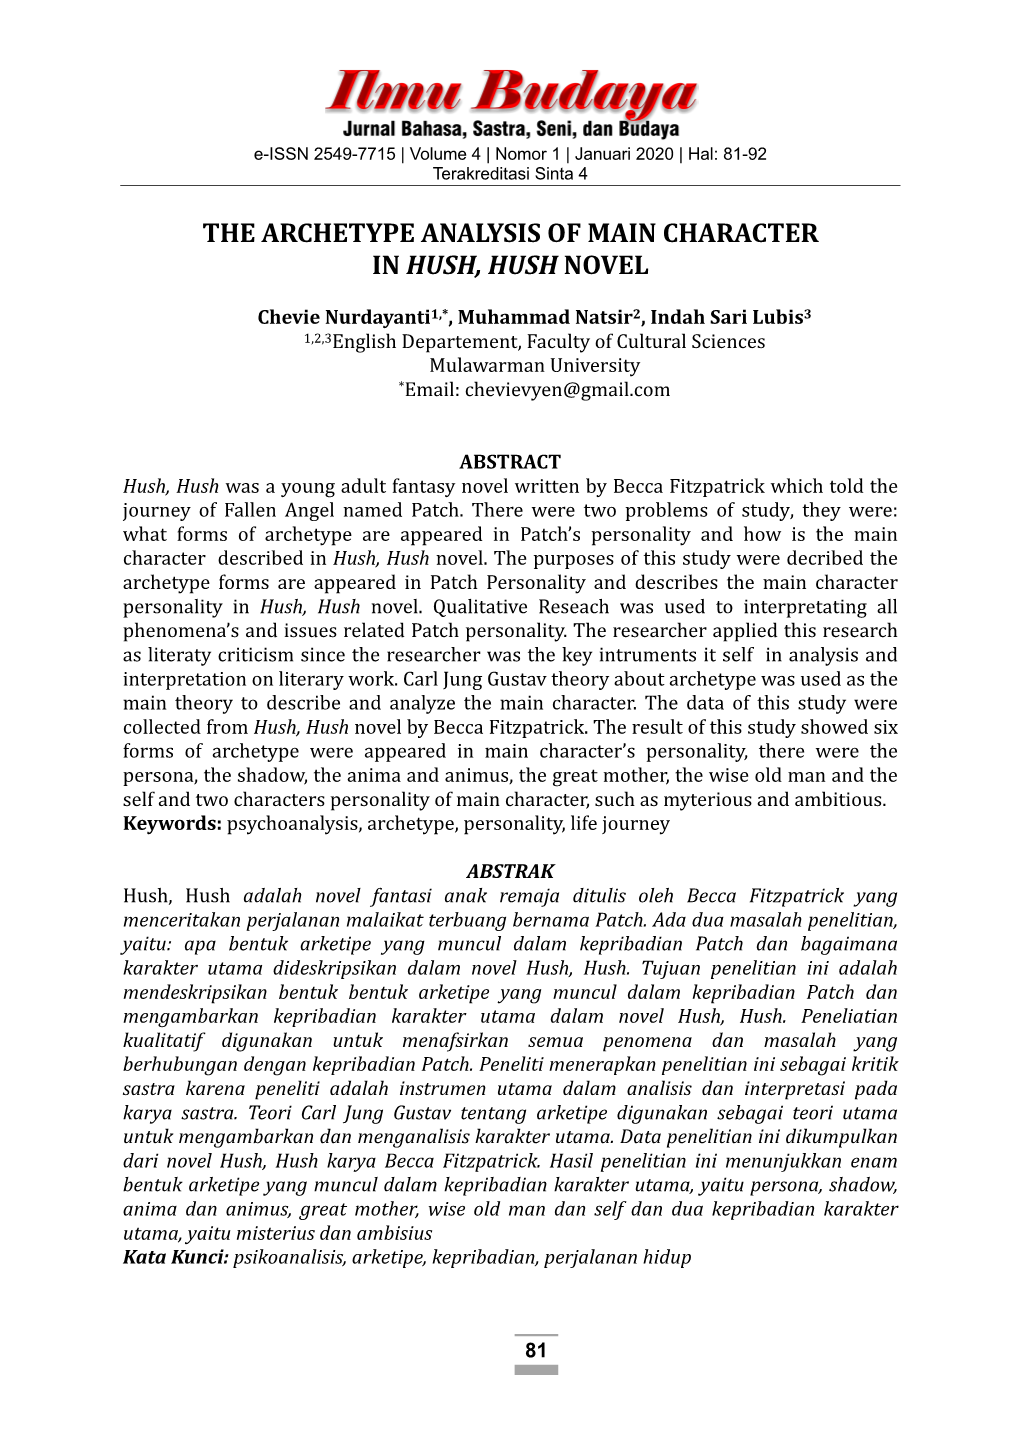 The Archetype Analysis of Main Character in Hush, Hush Novel